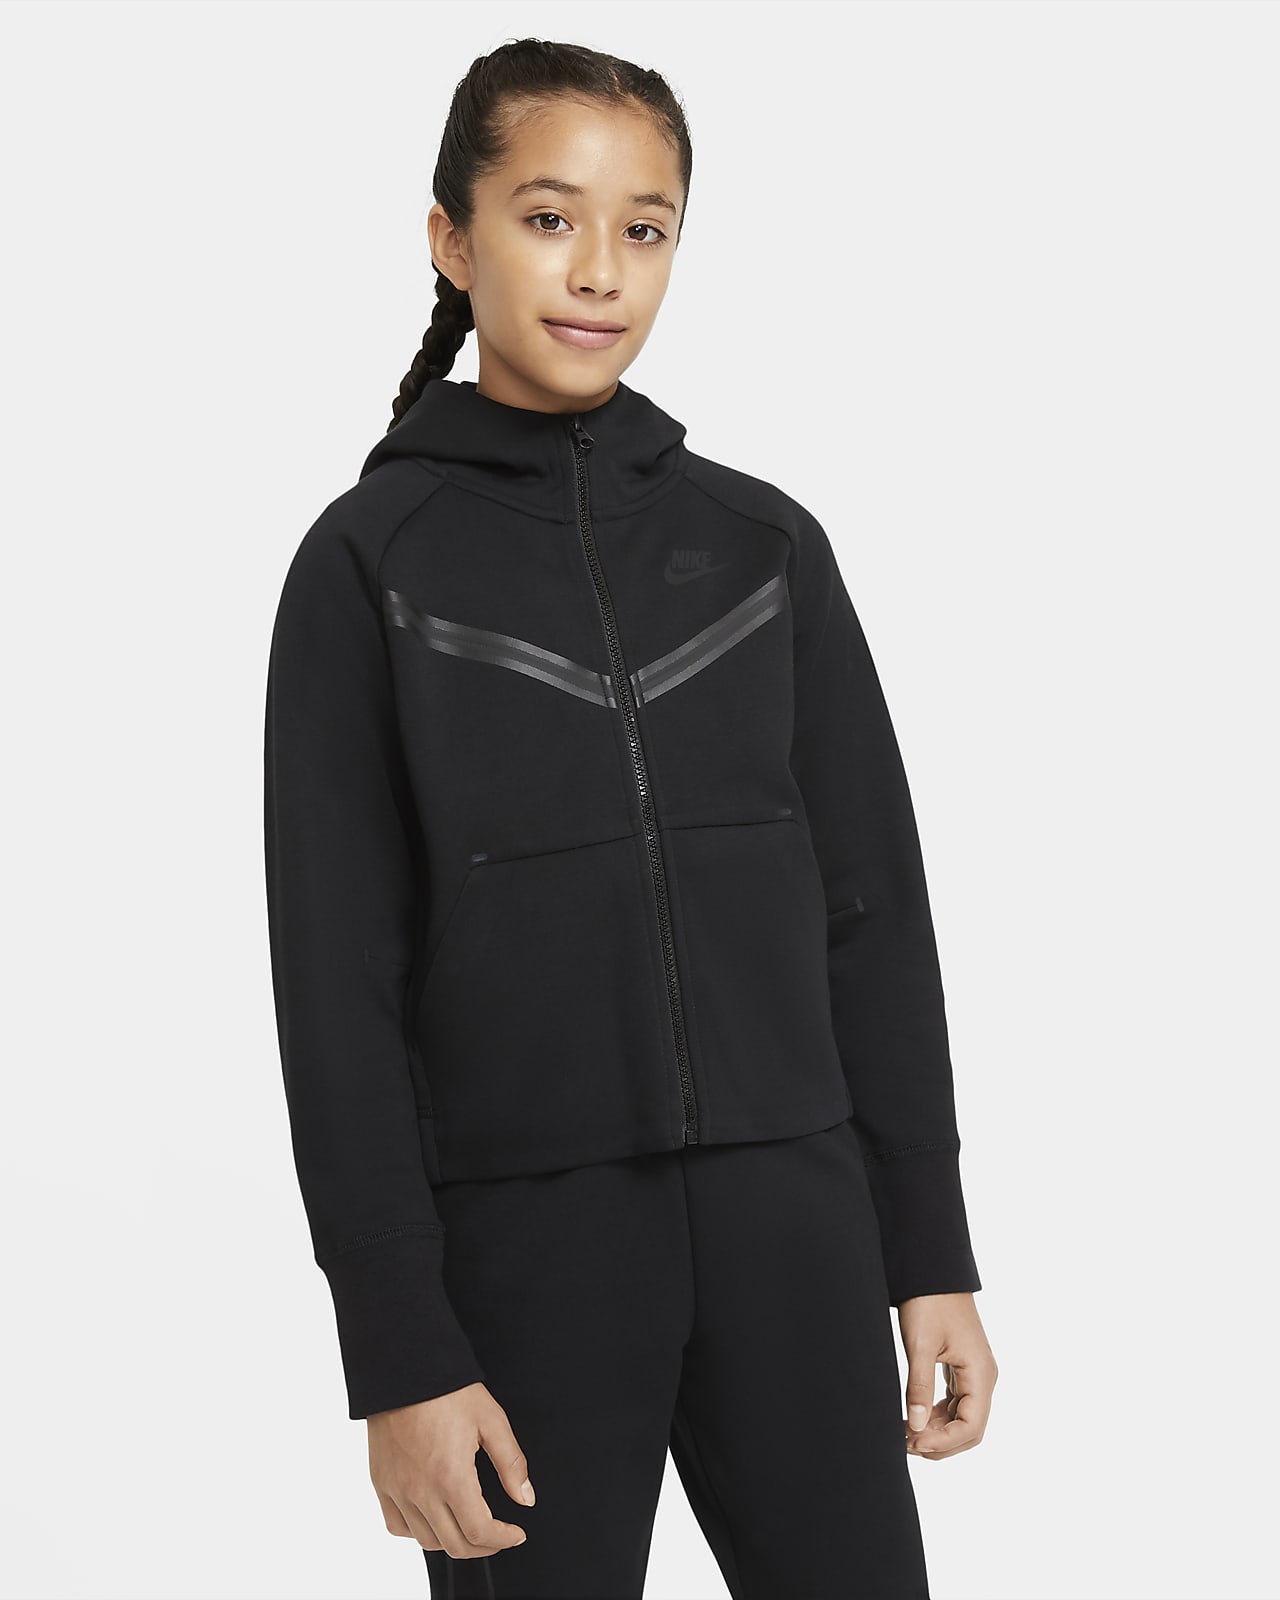 Tech Big (Girls') Full-Zip Hoodie. Nike.com